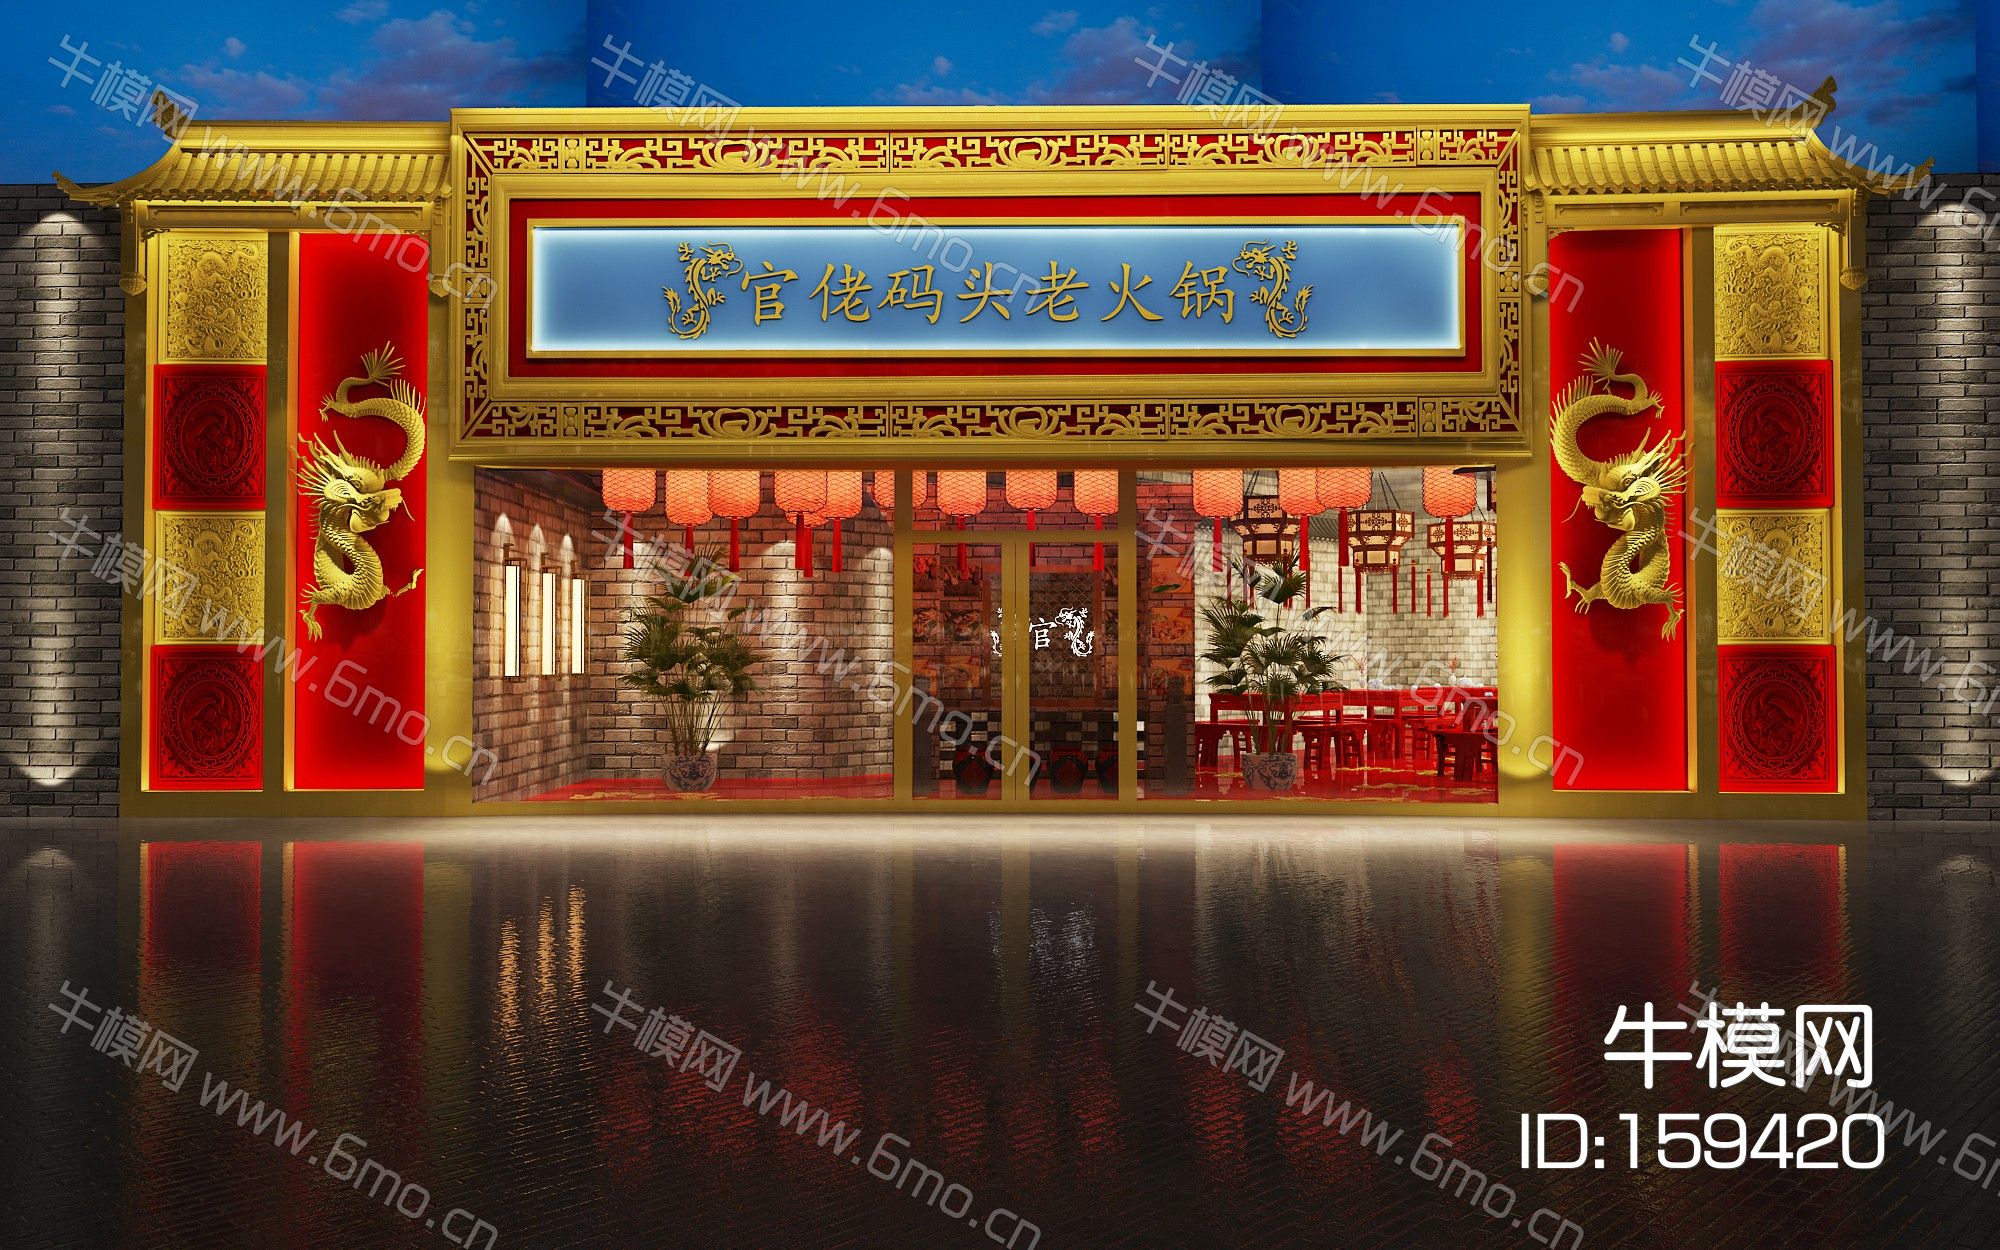 中式古典餐厅门头雕花牌匾龙雕浮雕雕花吊灯灯笼